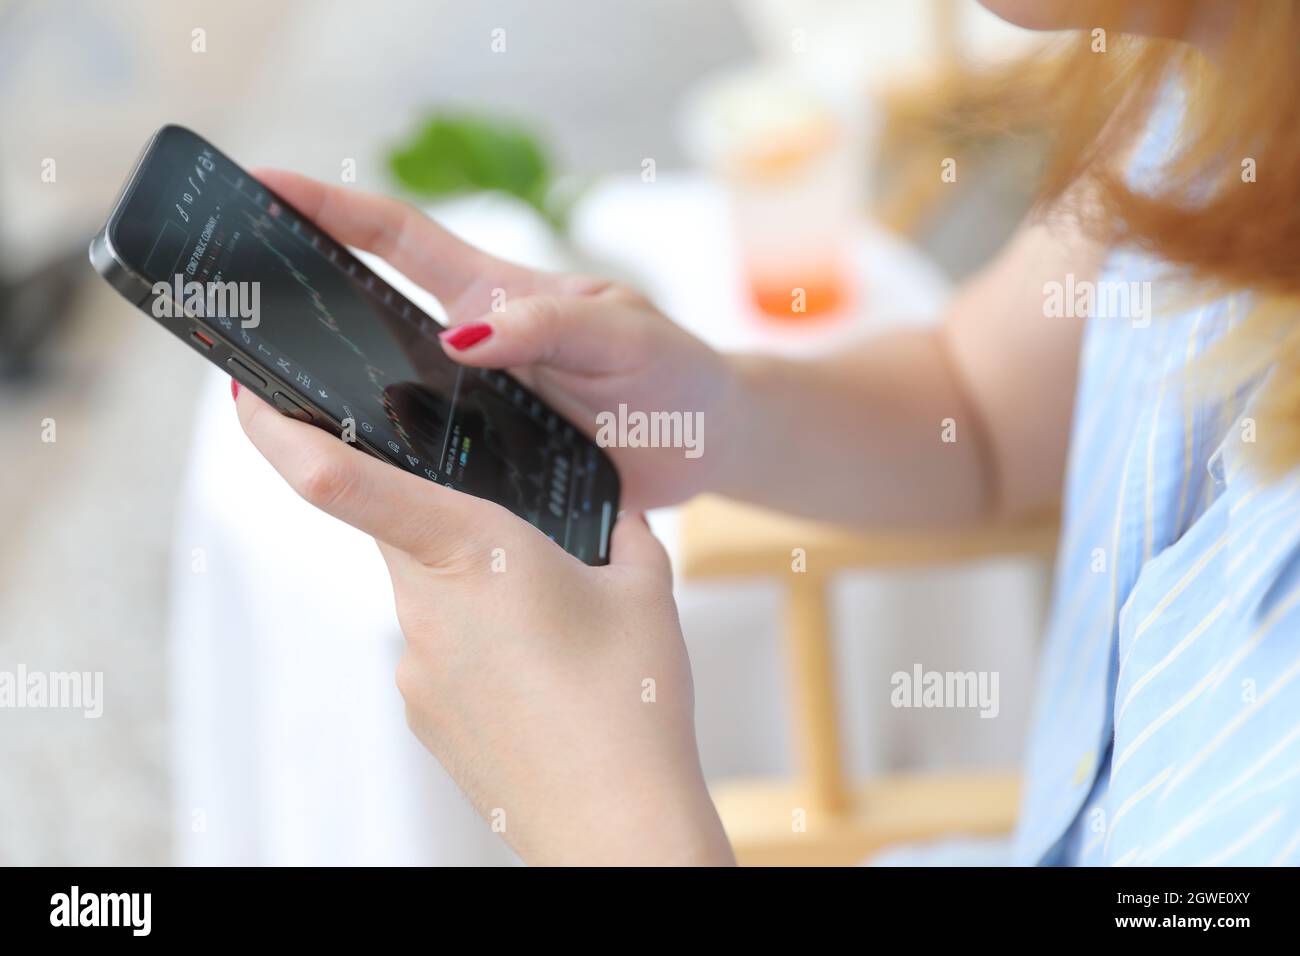 Main féminine avec smartphone trading stocks en ligne dans le café concept d'affaires Banque D'Images